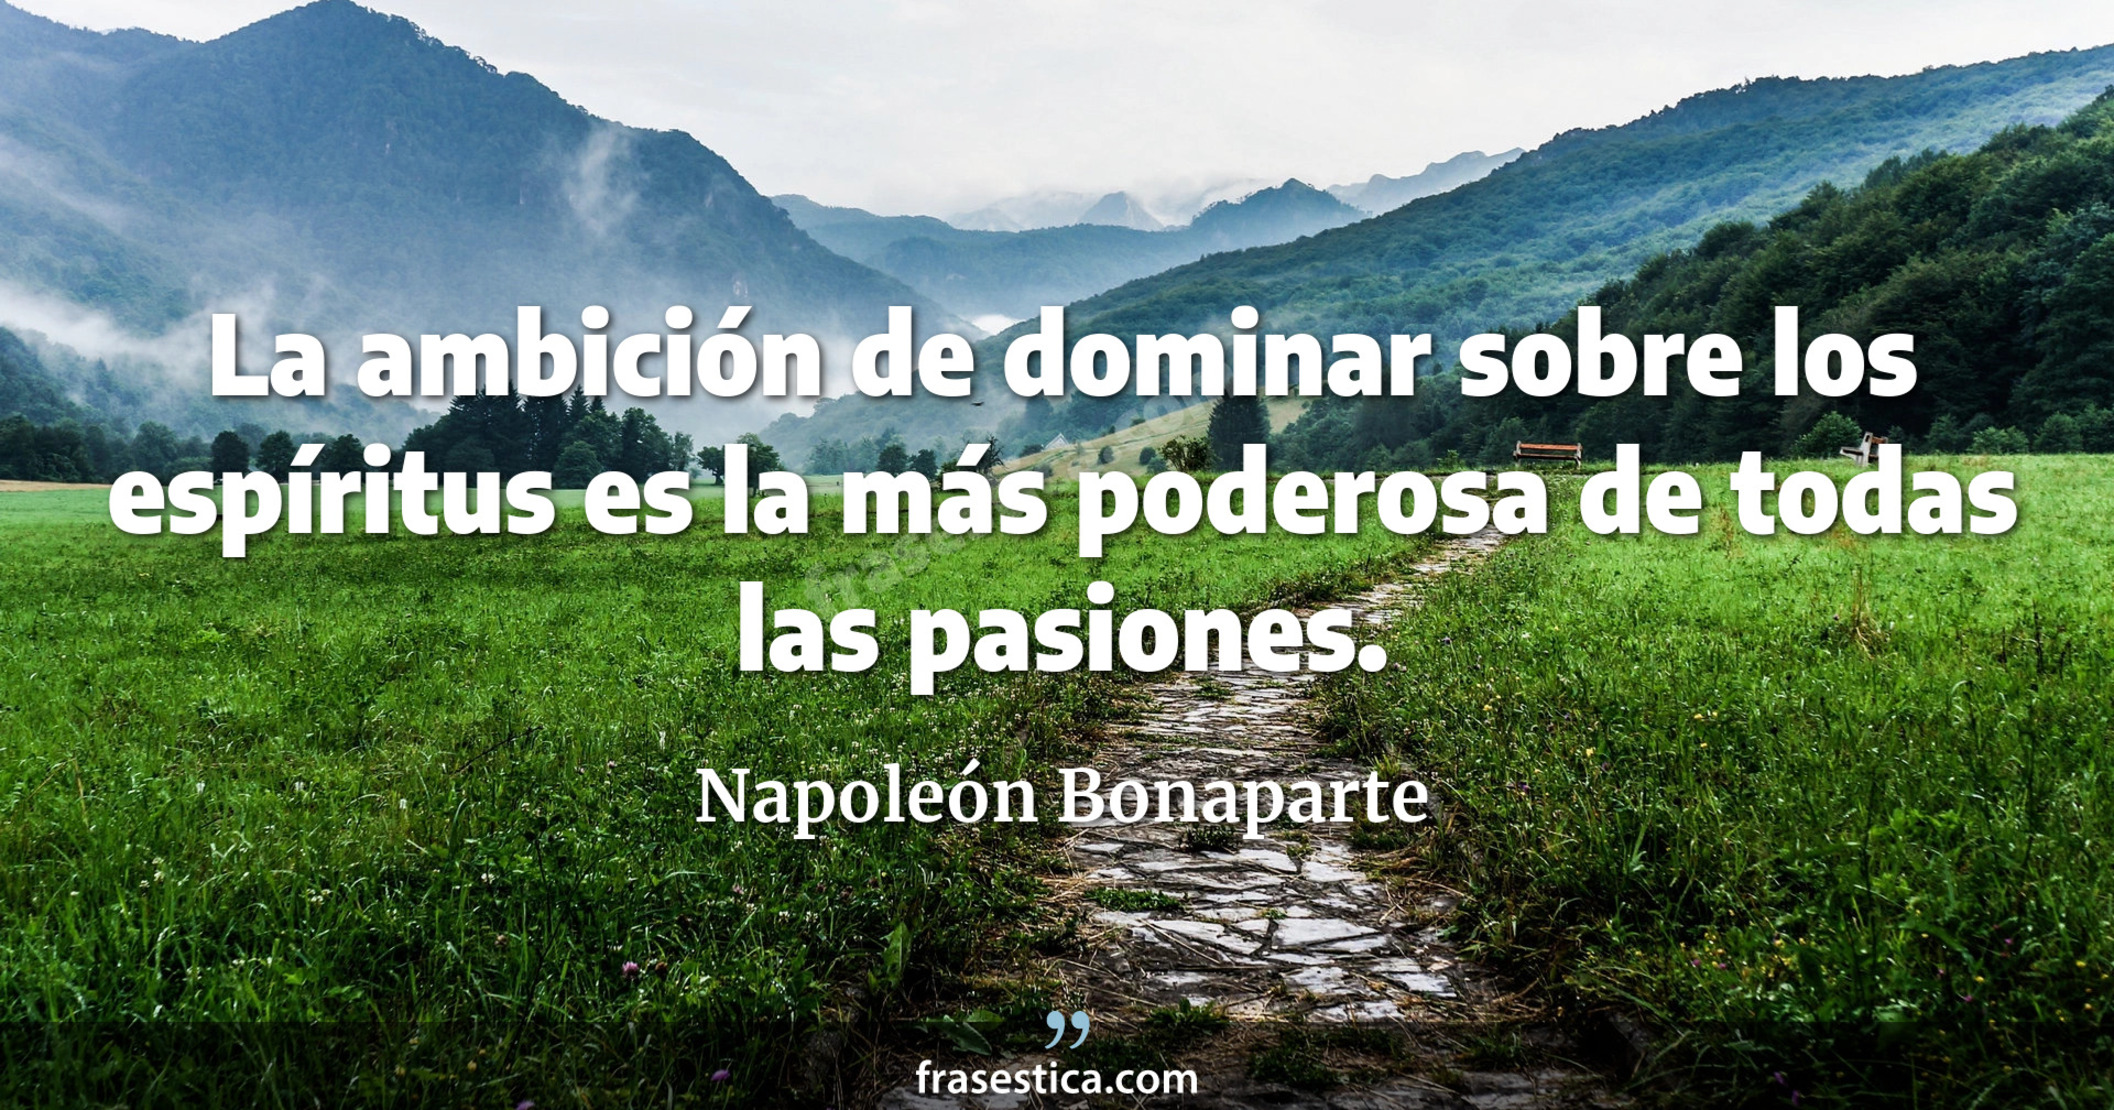 La ambición de dominar sobre los espíritus es la más poderosa de todas las pasiones. - Napoleón Bonaparte